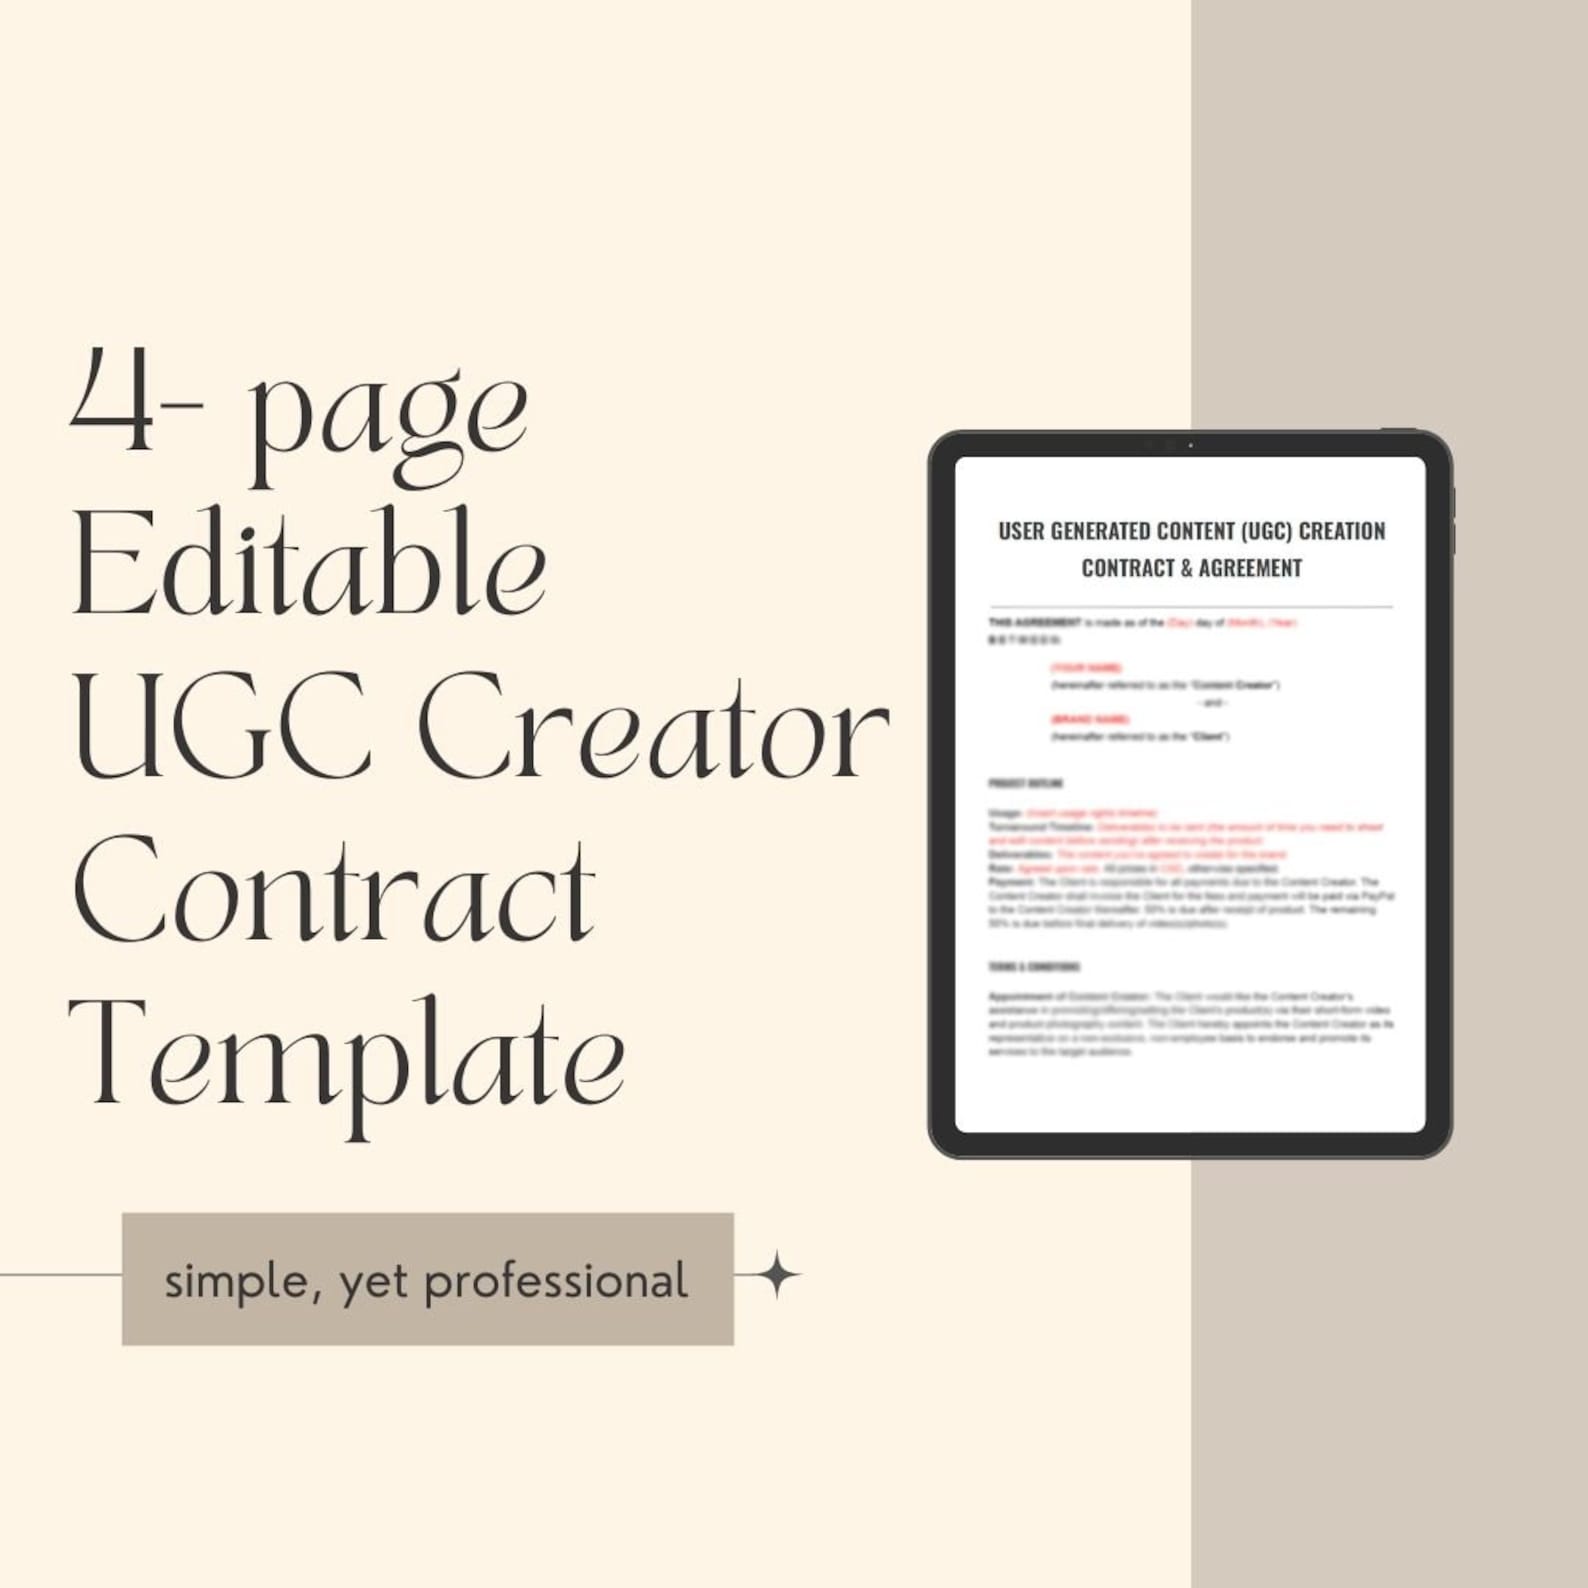 ugc-creator-contract-template-ugc-template-ugc-contract-etsy-uk